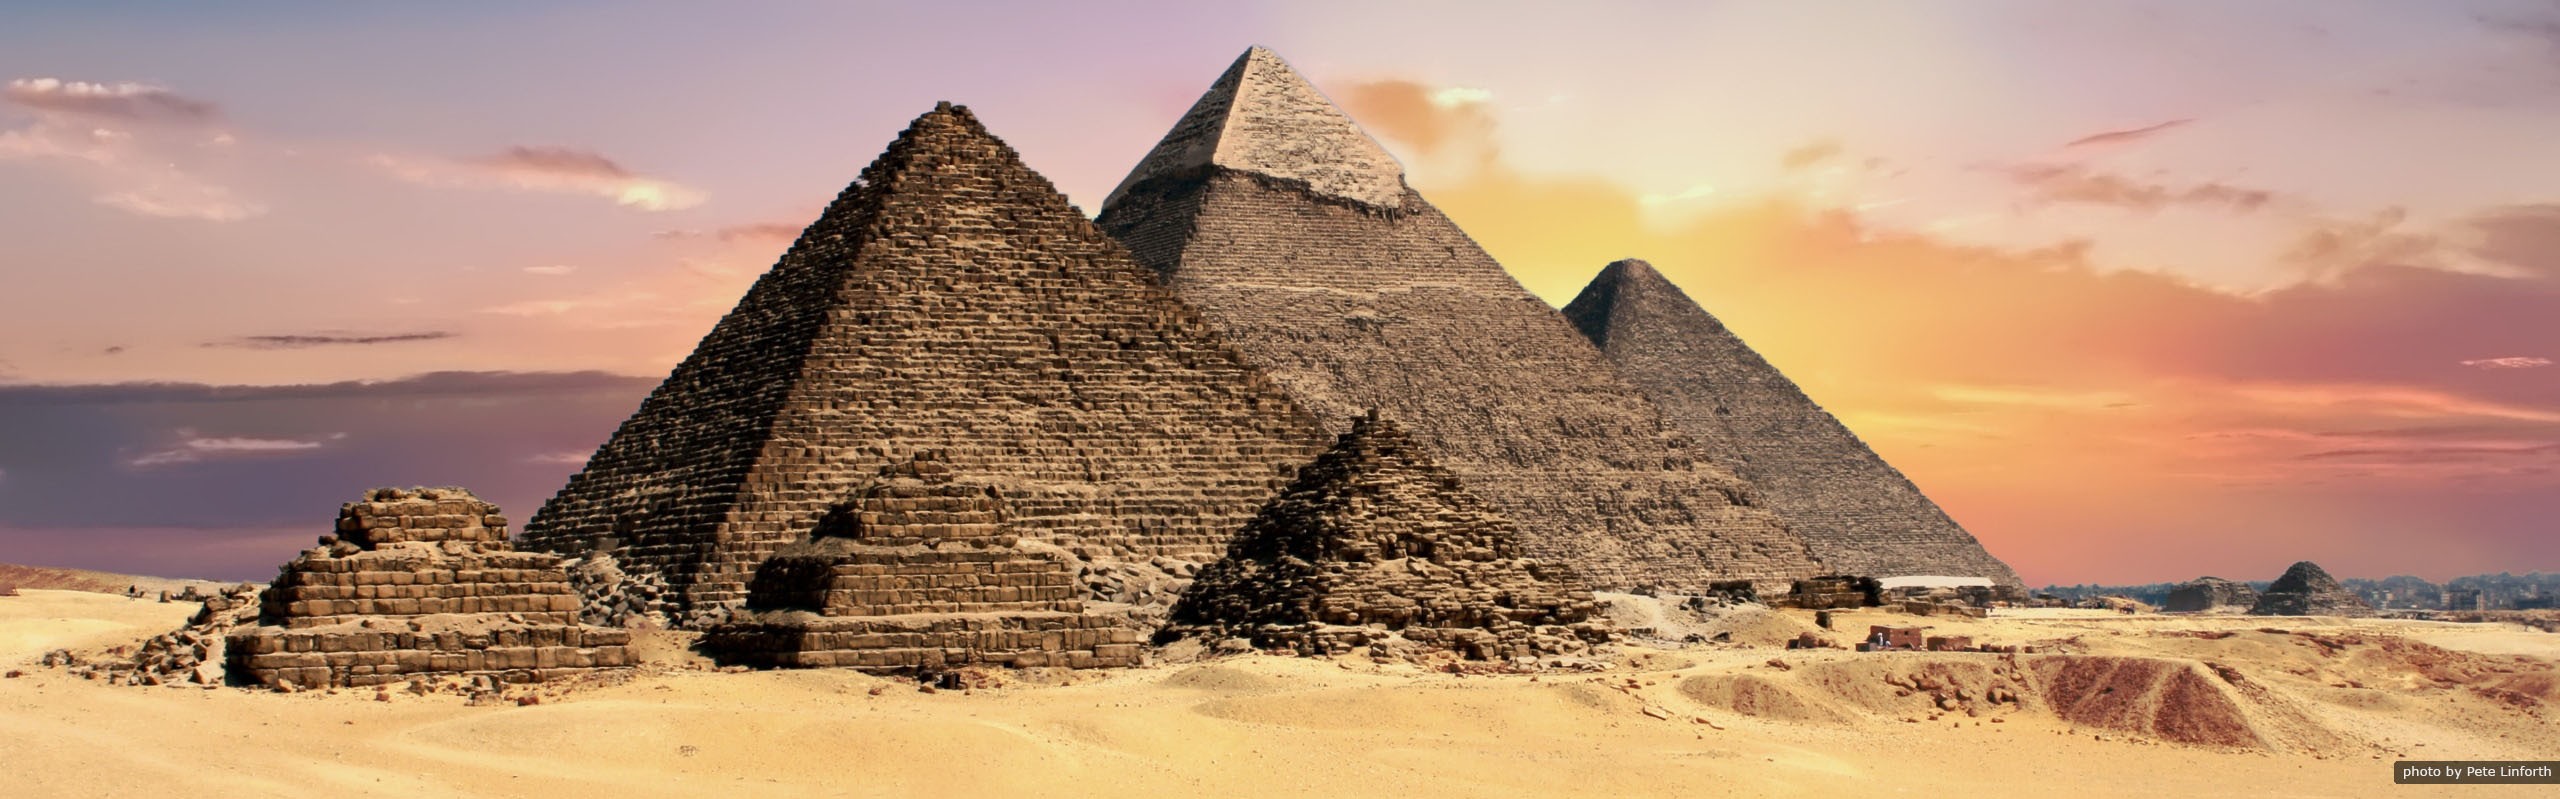 Who Built the Pyramids of Giza? Three Pharaohs